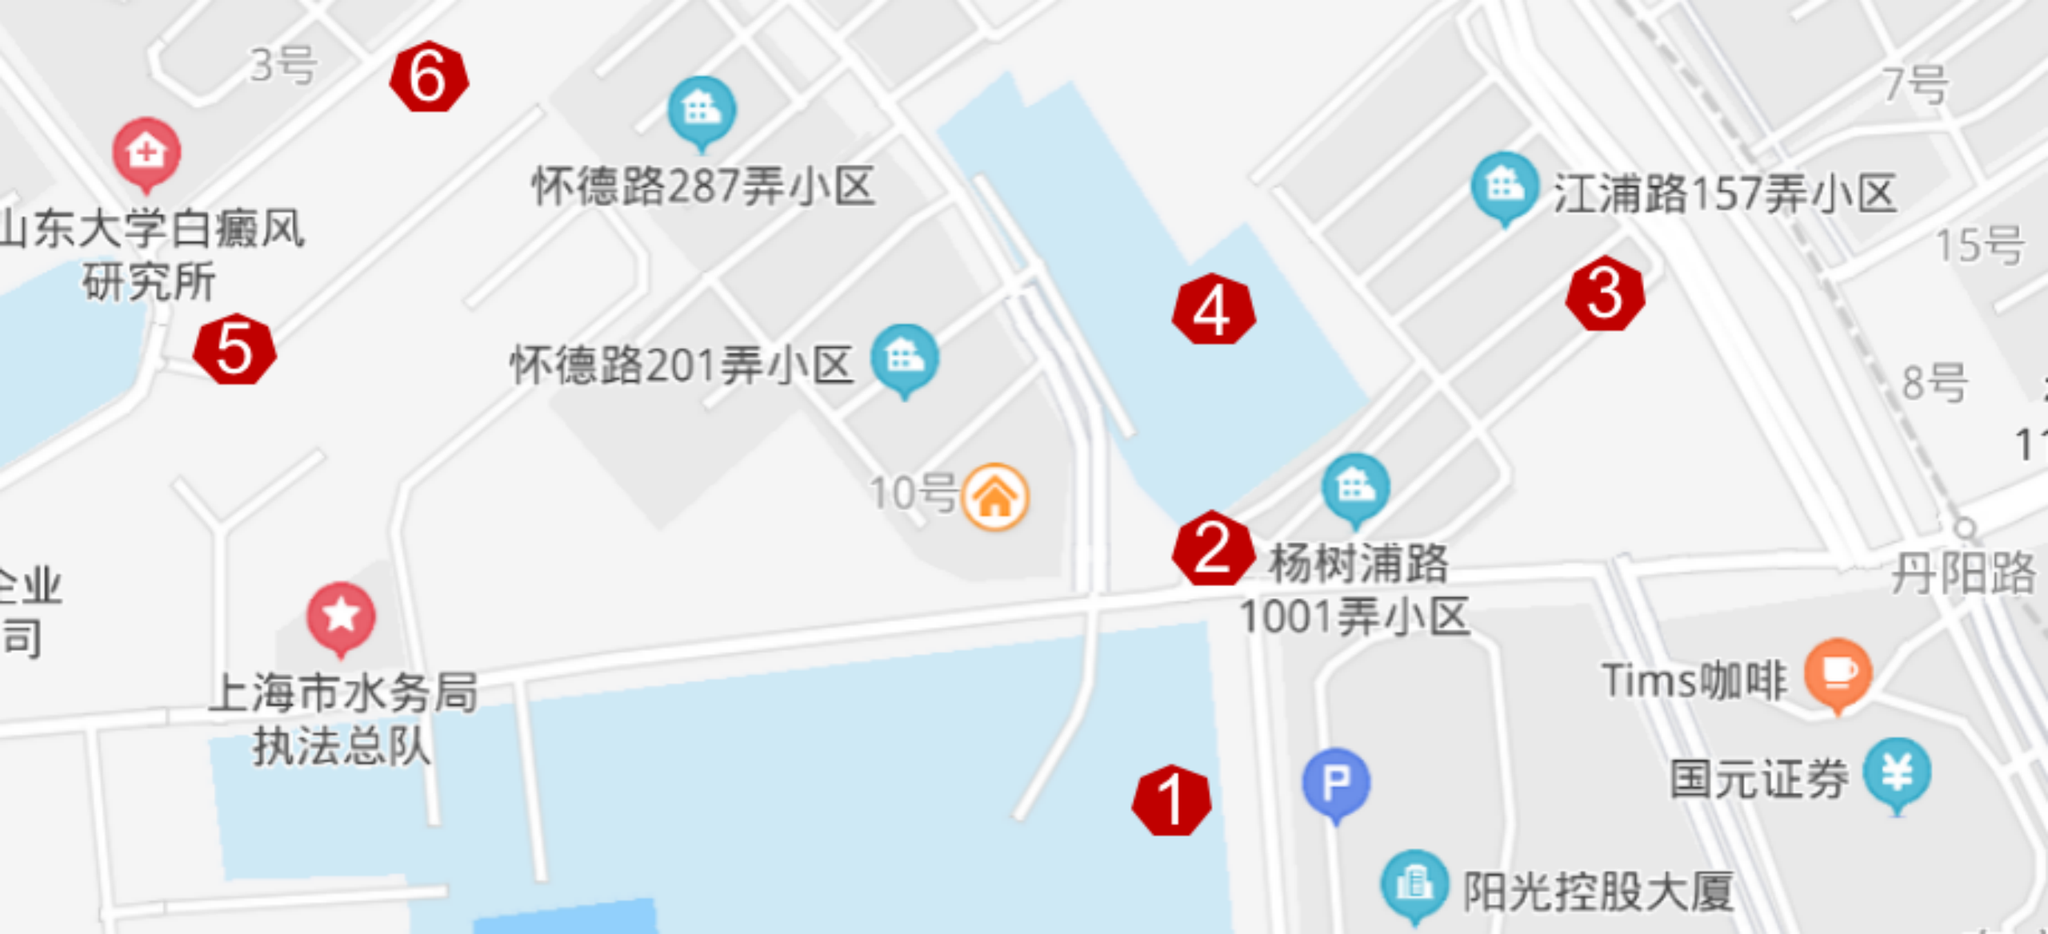 杨树浦水厂及周边住宅群地图 作者供图